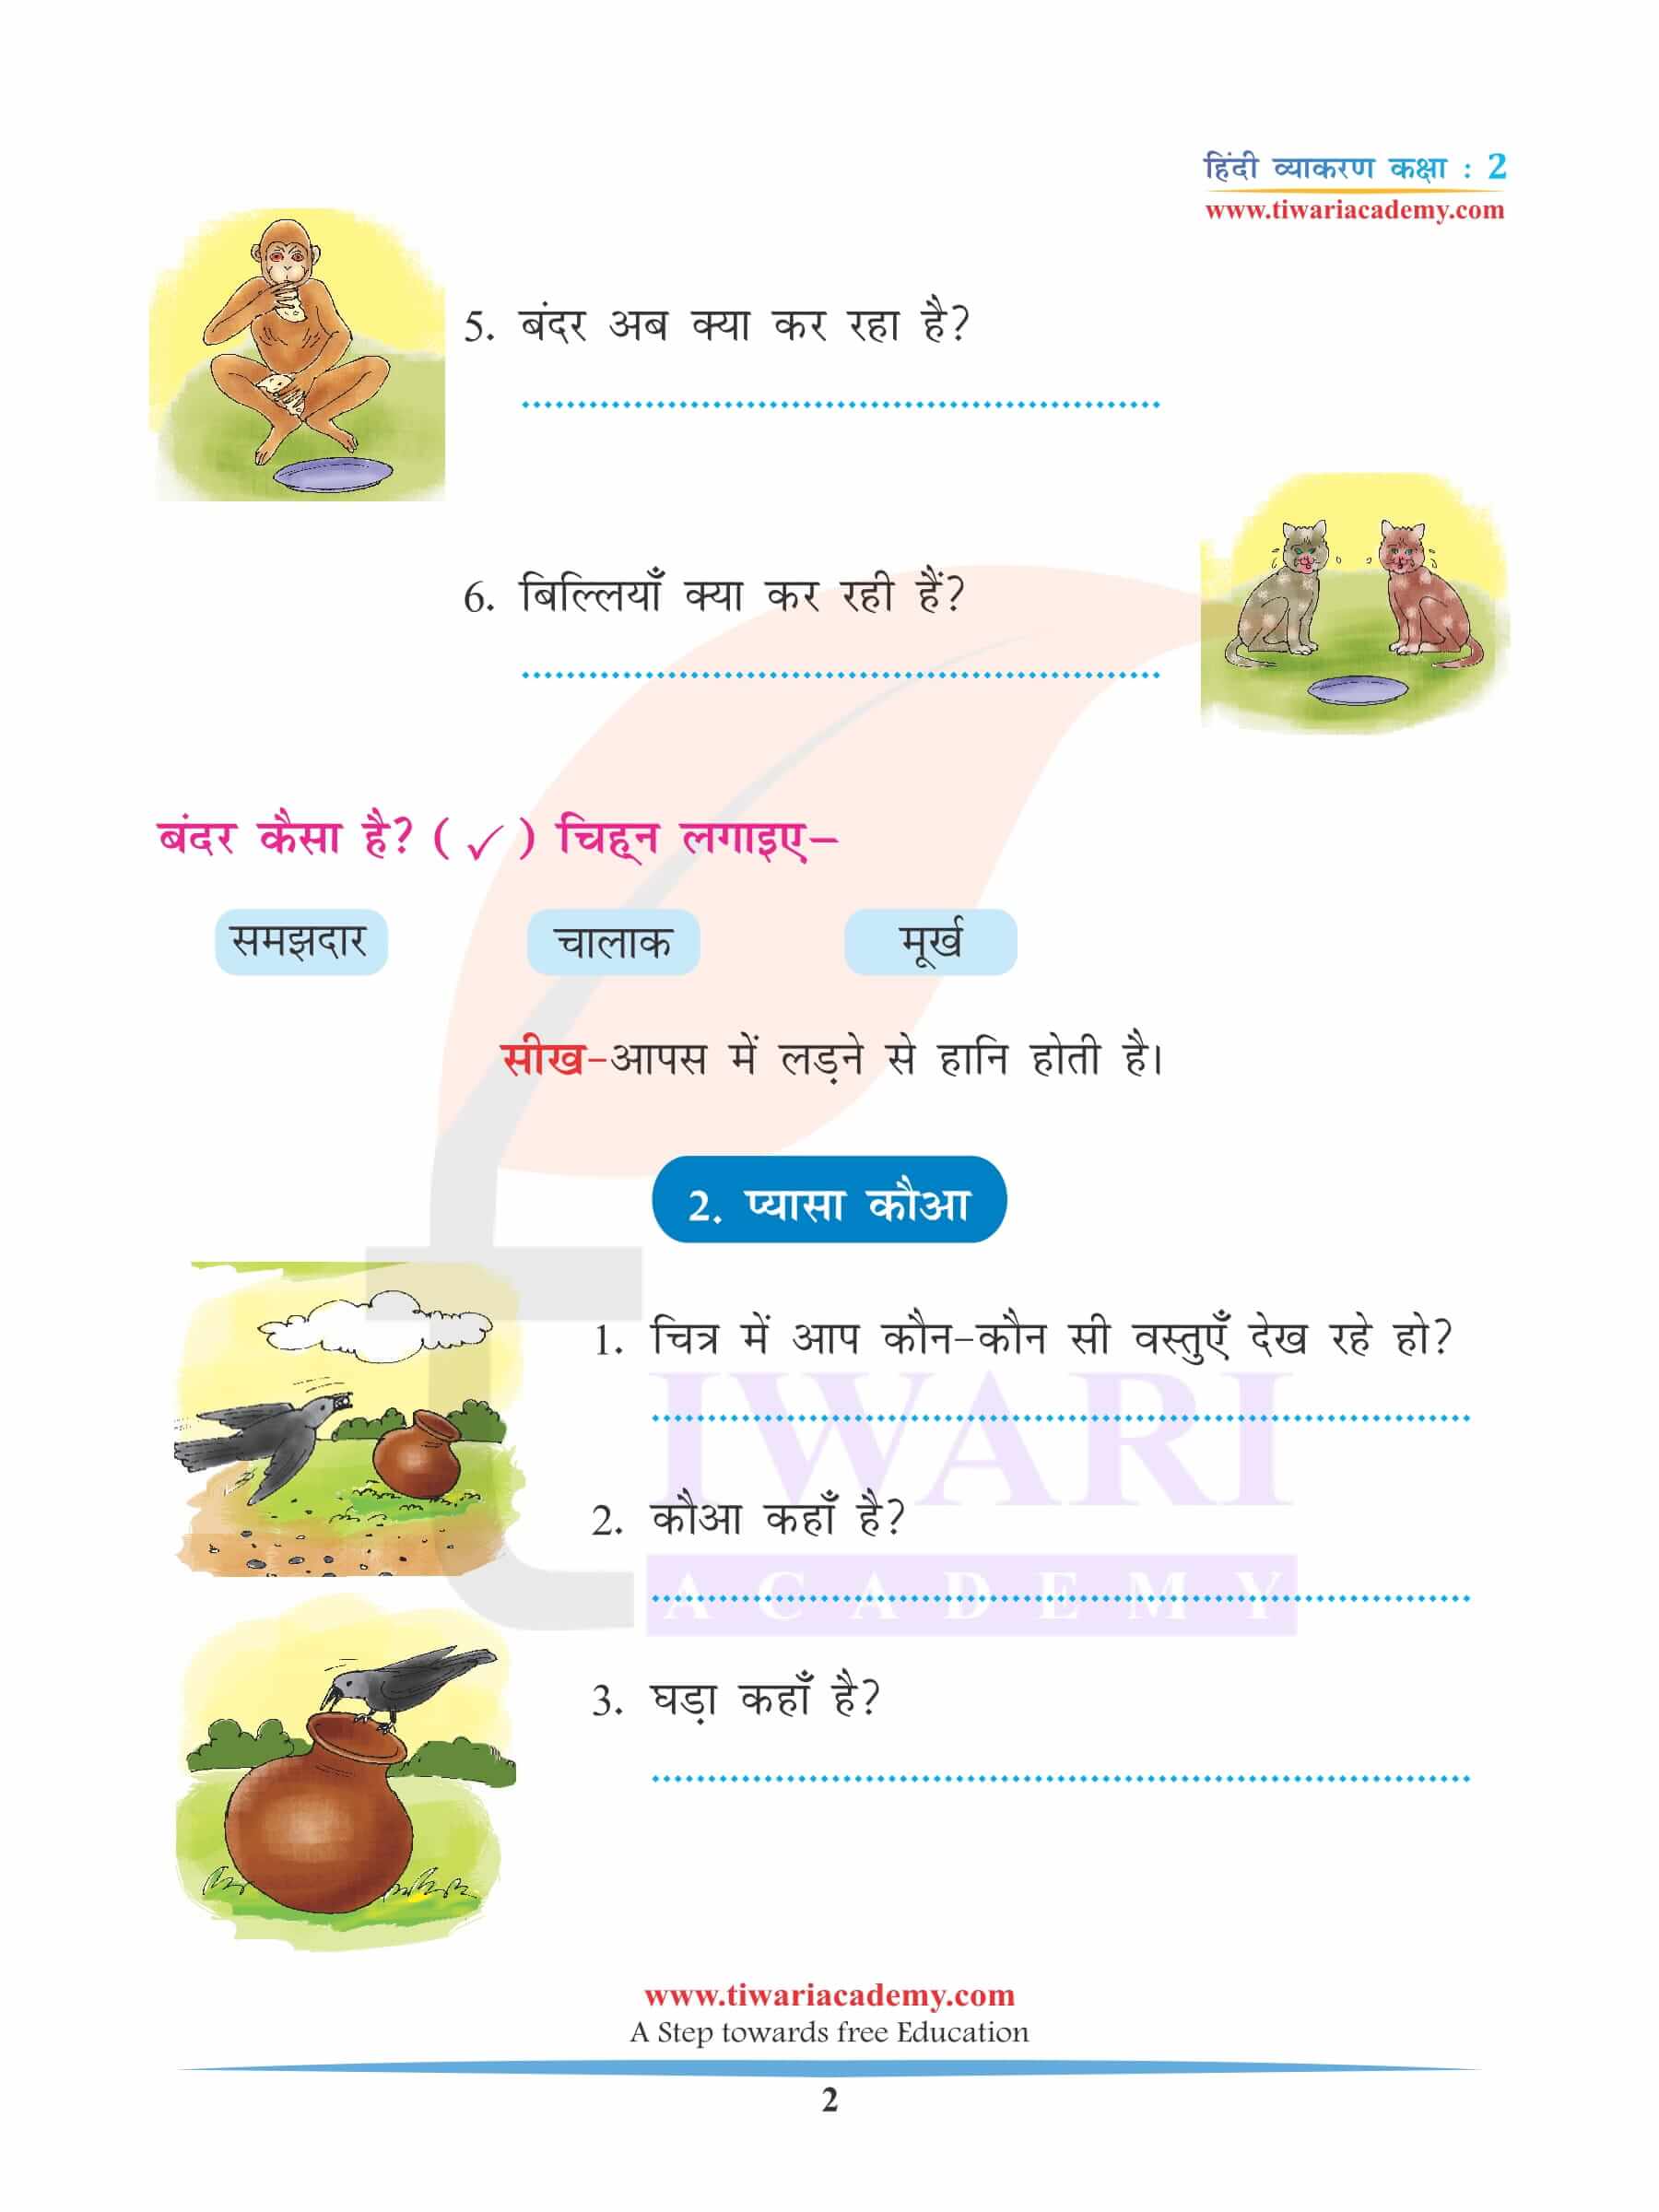 कक्षा 2 हिंदी व्याकरण अध्याय 13 लेखन में छात्र निबंध लेखन, अनुच्छेद लेखन और कहानी लेखन